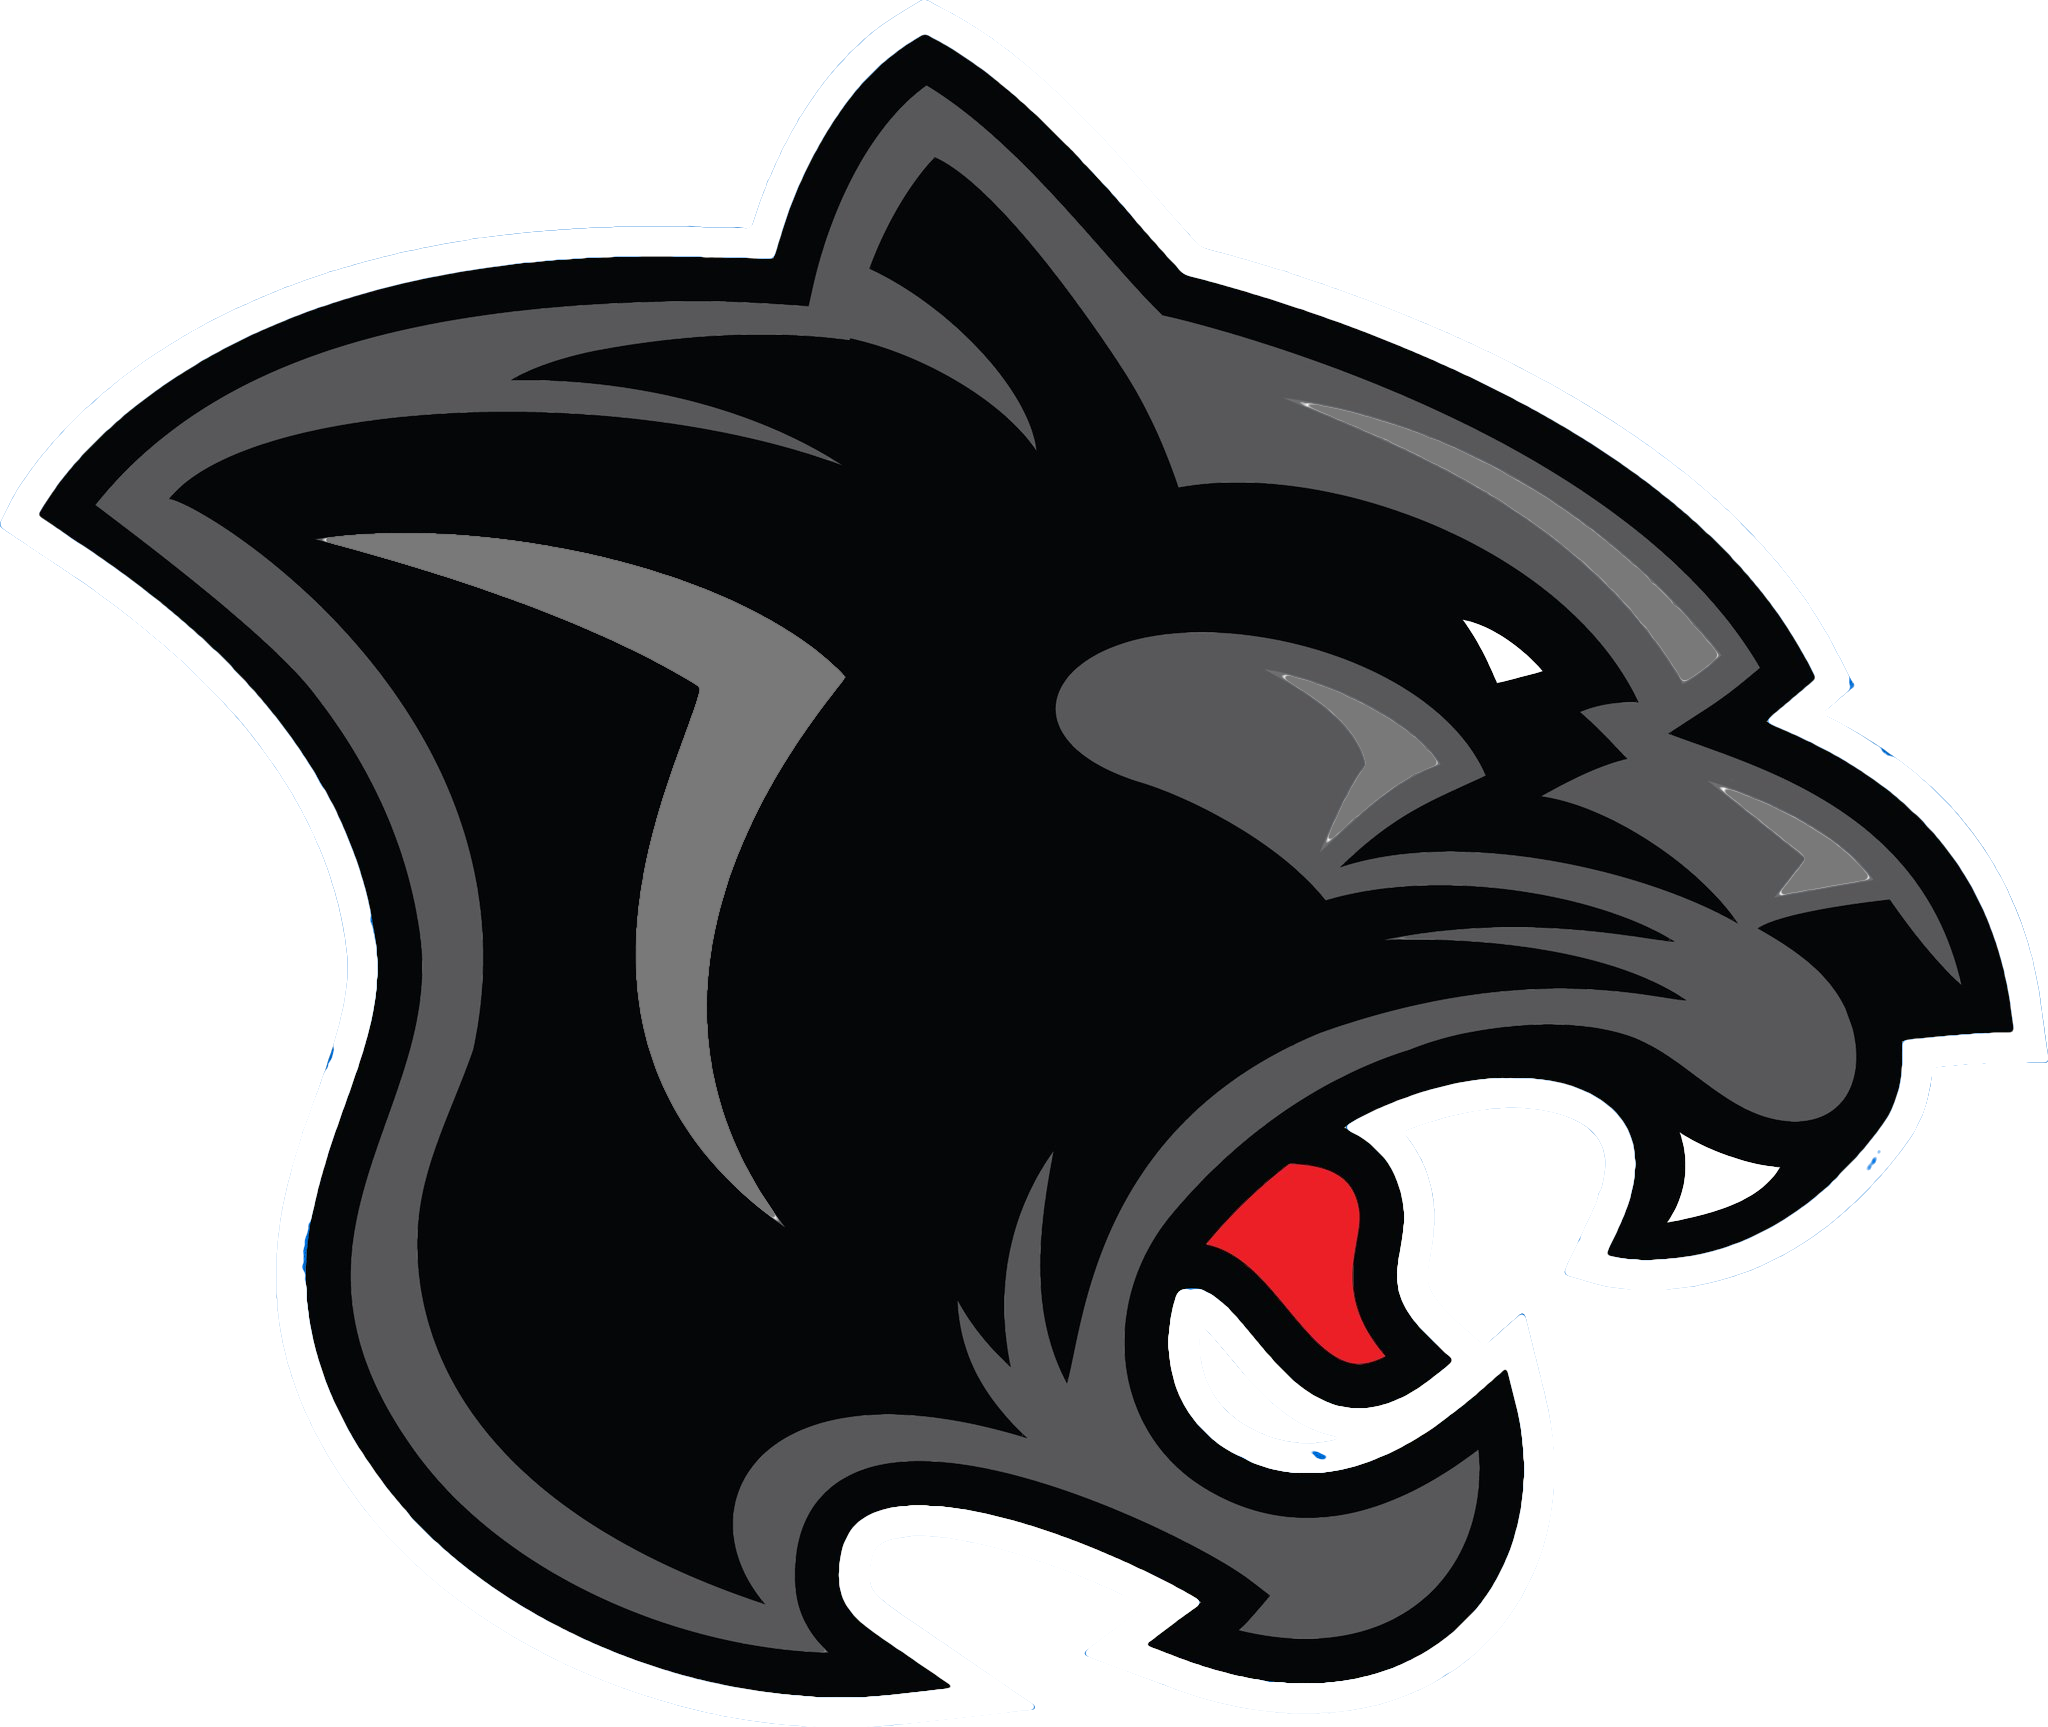 Marvel Black Panther Logo Png : Download #blackpanther #marvel #chibi ...